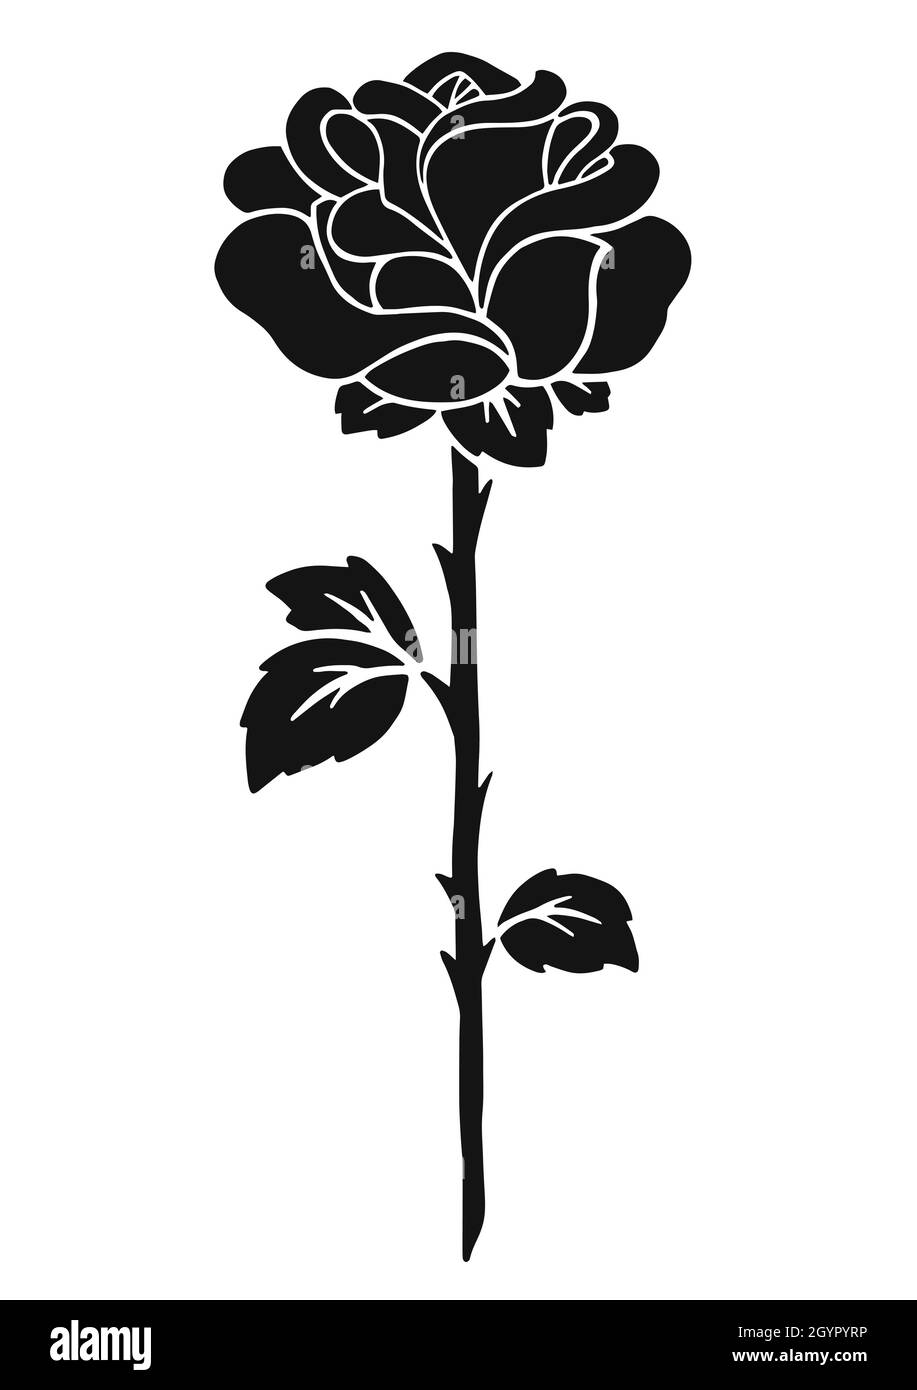 Hoa hồng đen bóng chắc chắn sẽ làm nổi bật bất kỳ sản phẩm nào của bạn. Bộ tem hình bóng đen này sẽ mang đến cho sản phẩm của bạn một vẻ đẹp đầy bí ẩn và tinh tế.